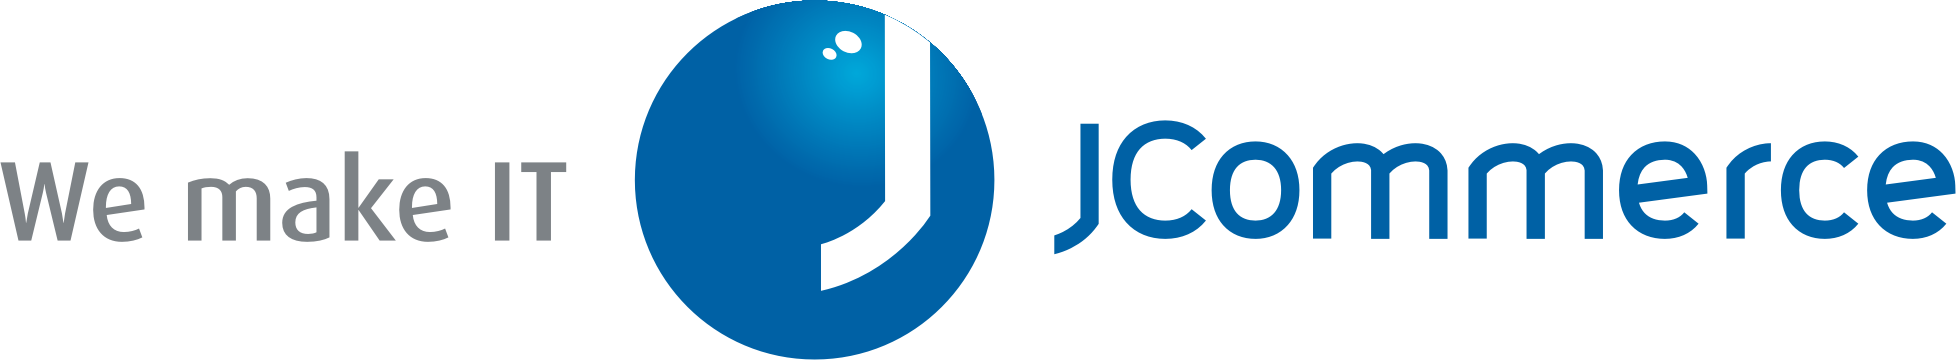 Jcommerce logo